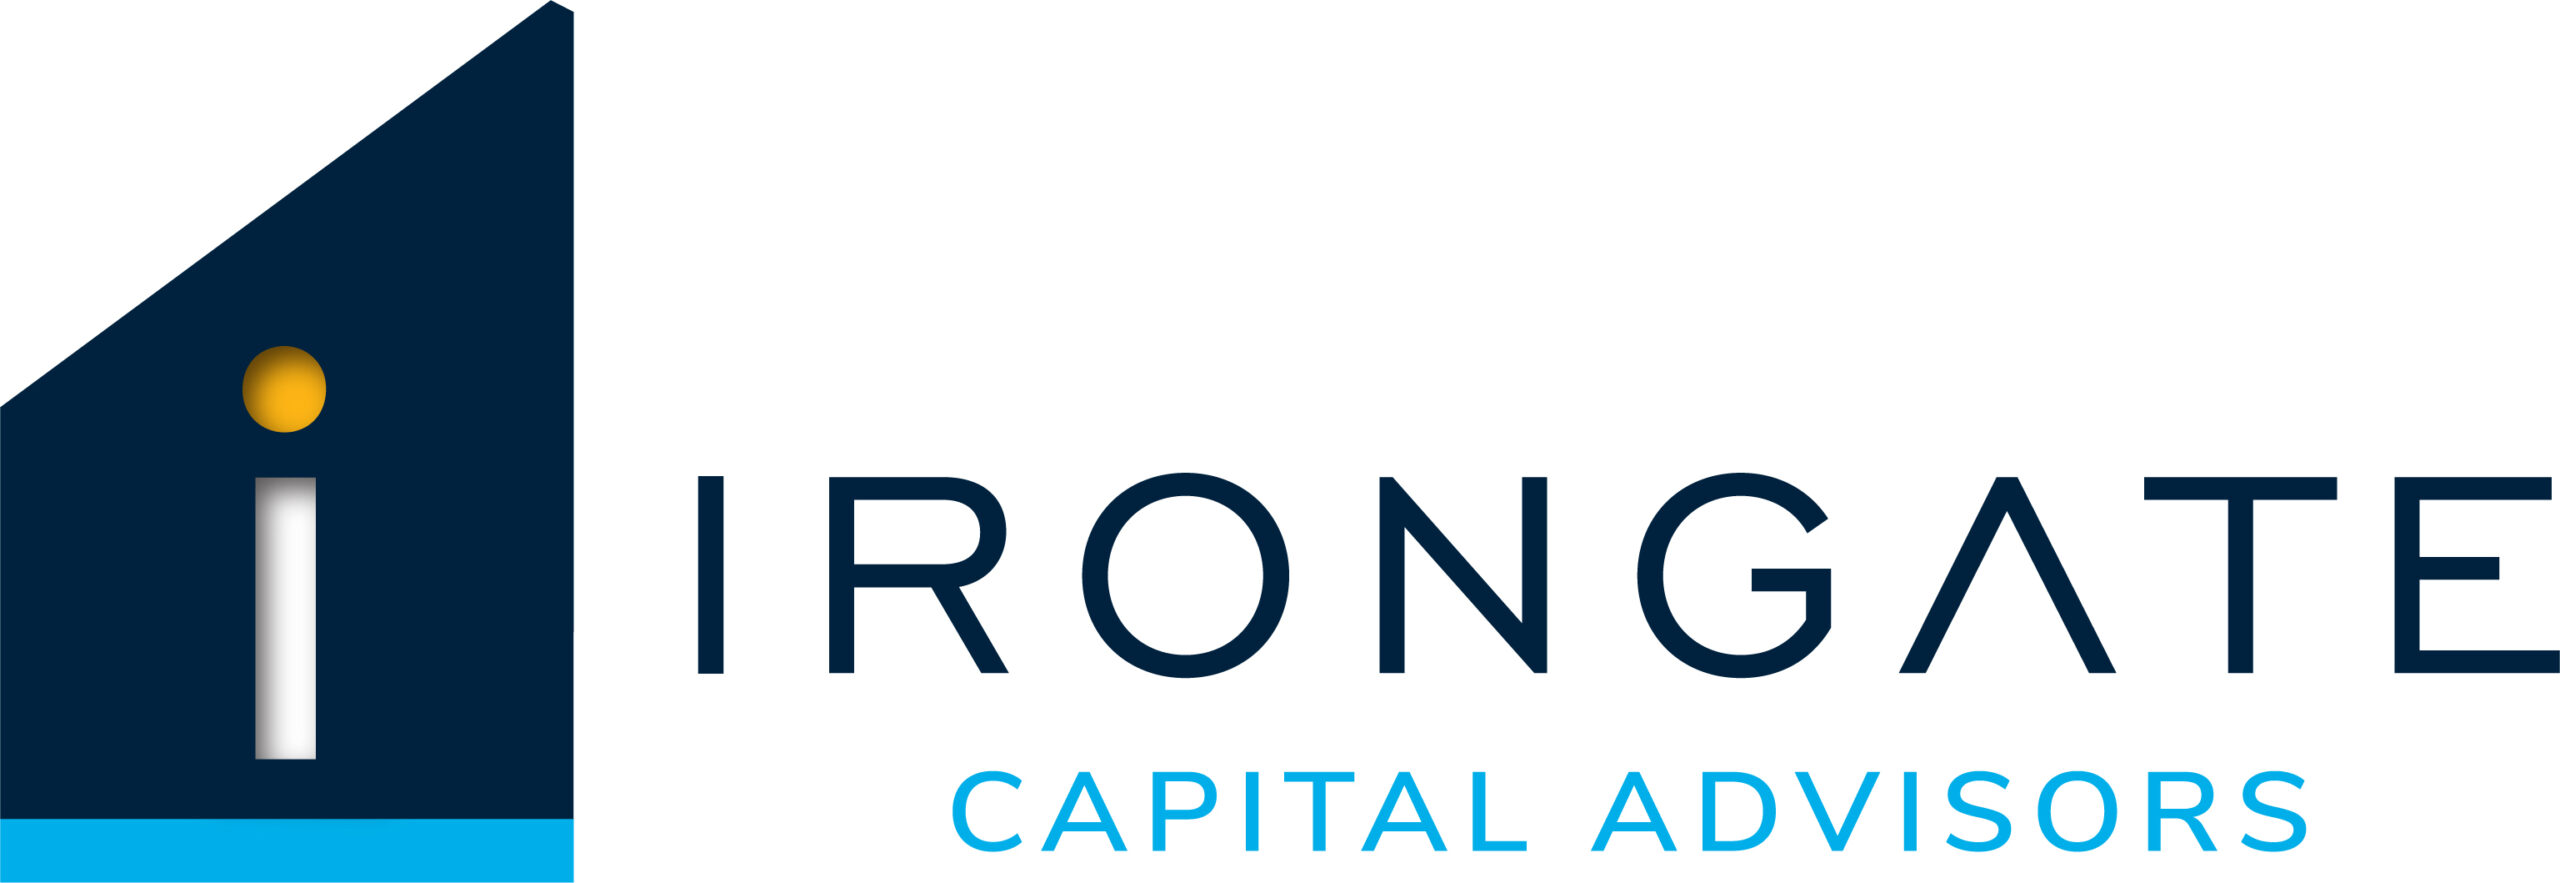 Irongate Capital Advisors, LLC